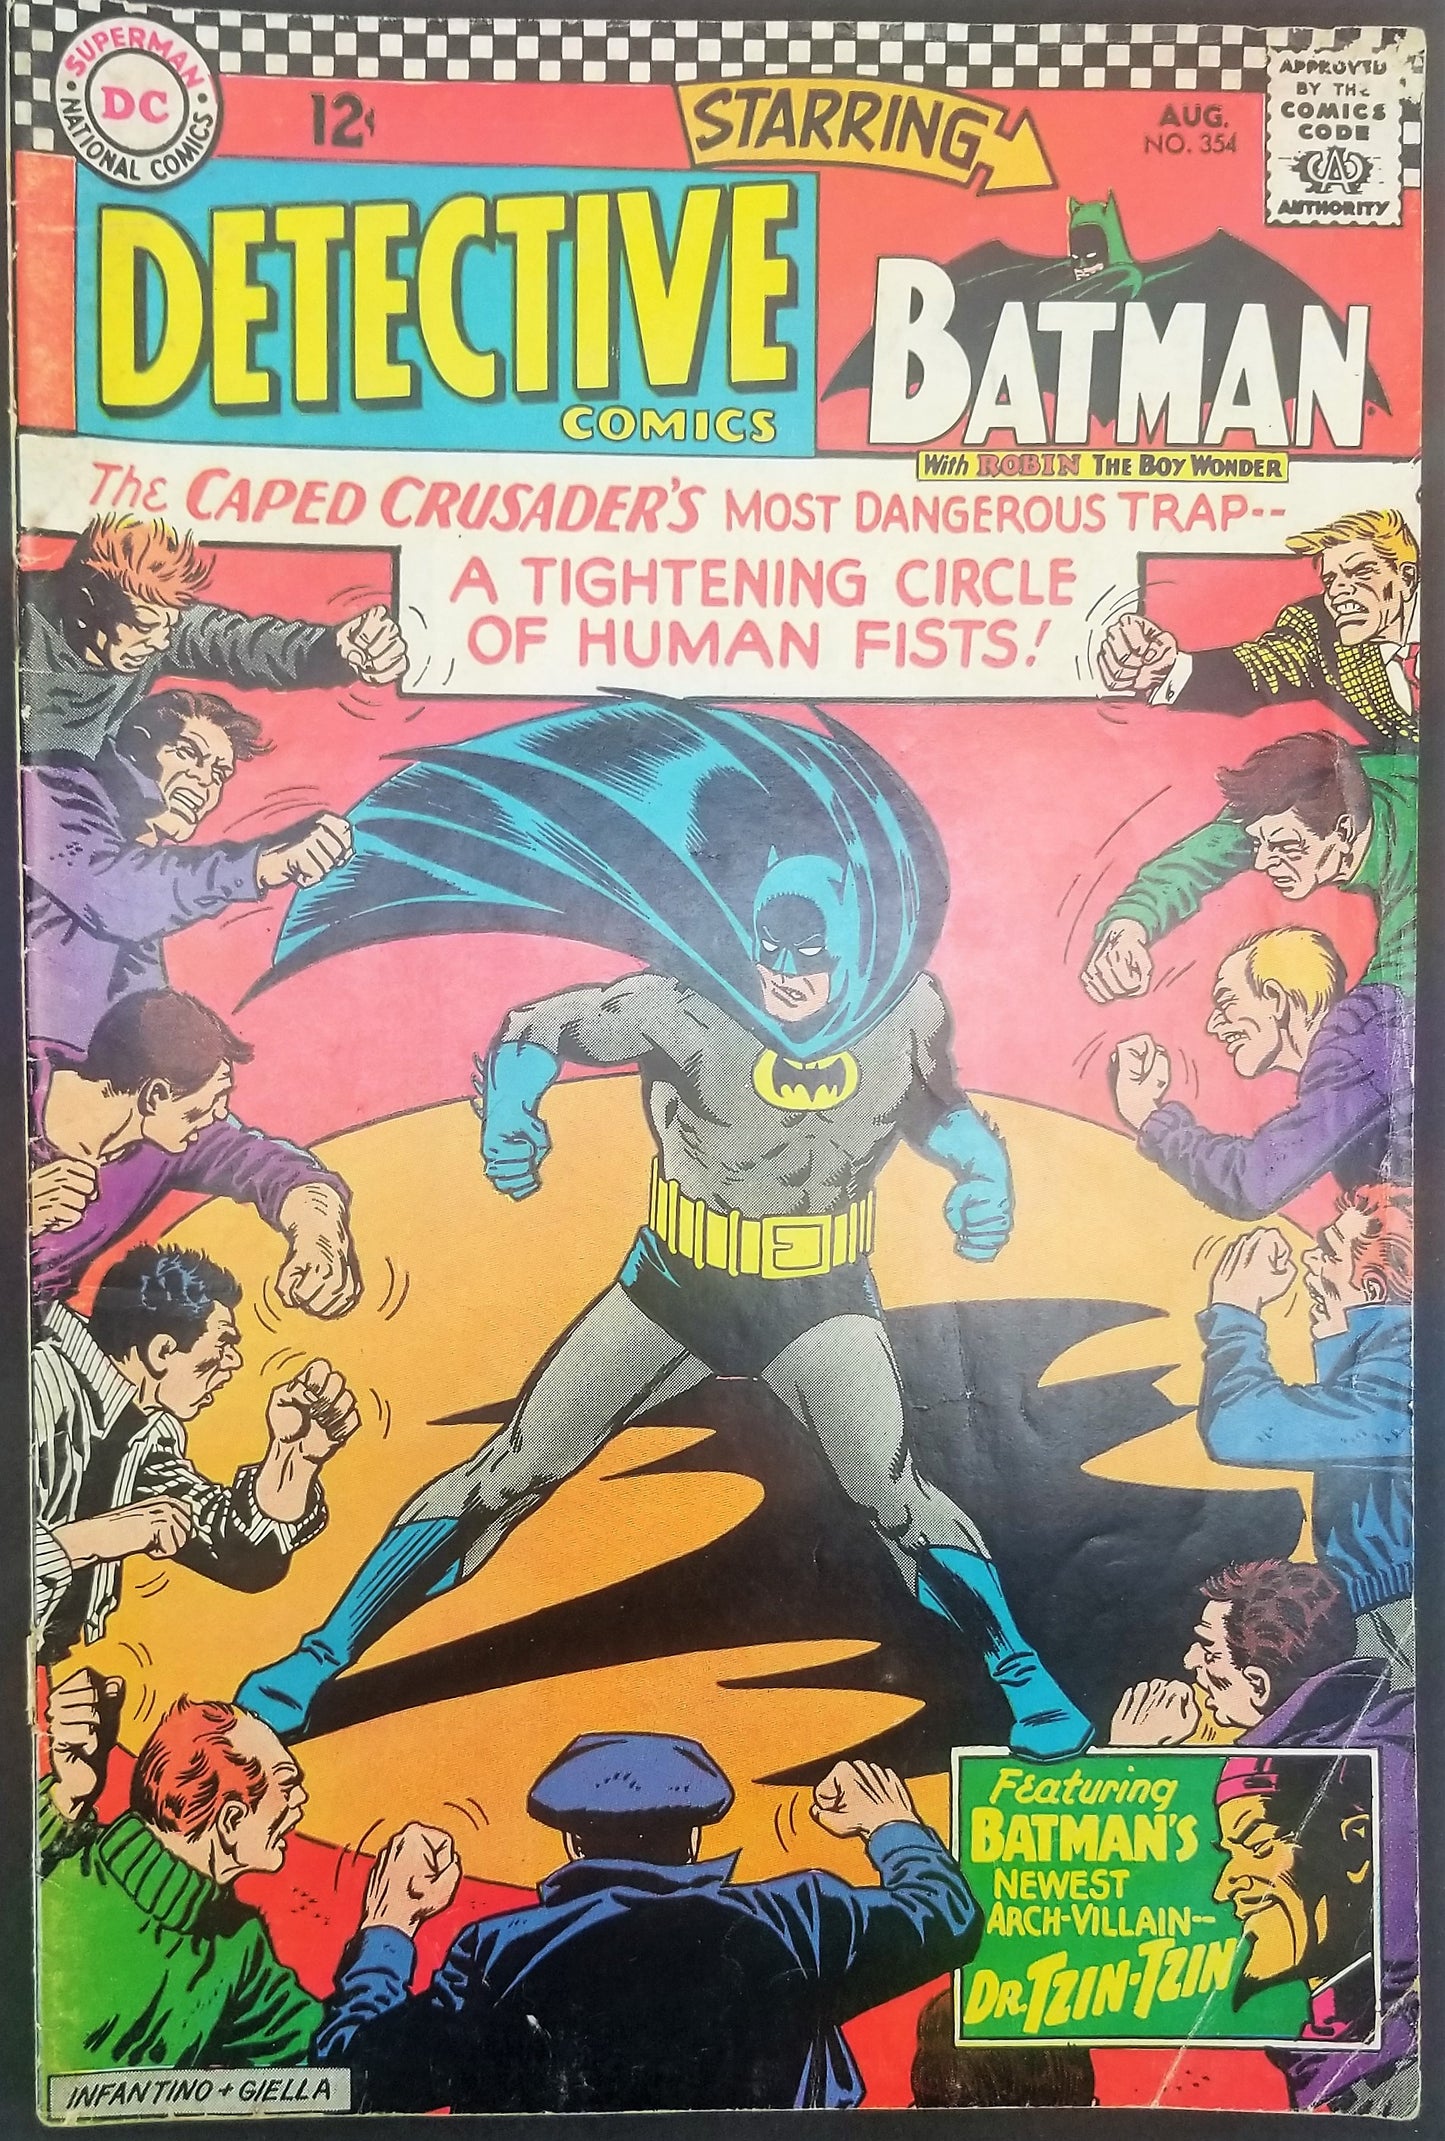 Detective Comics No. 354, Starring Batman, DC Comics, August 1966